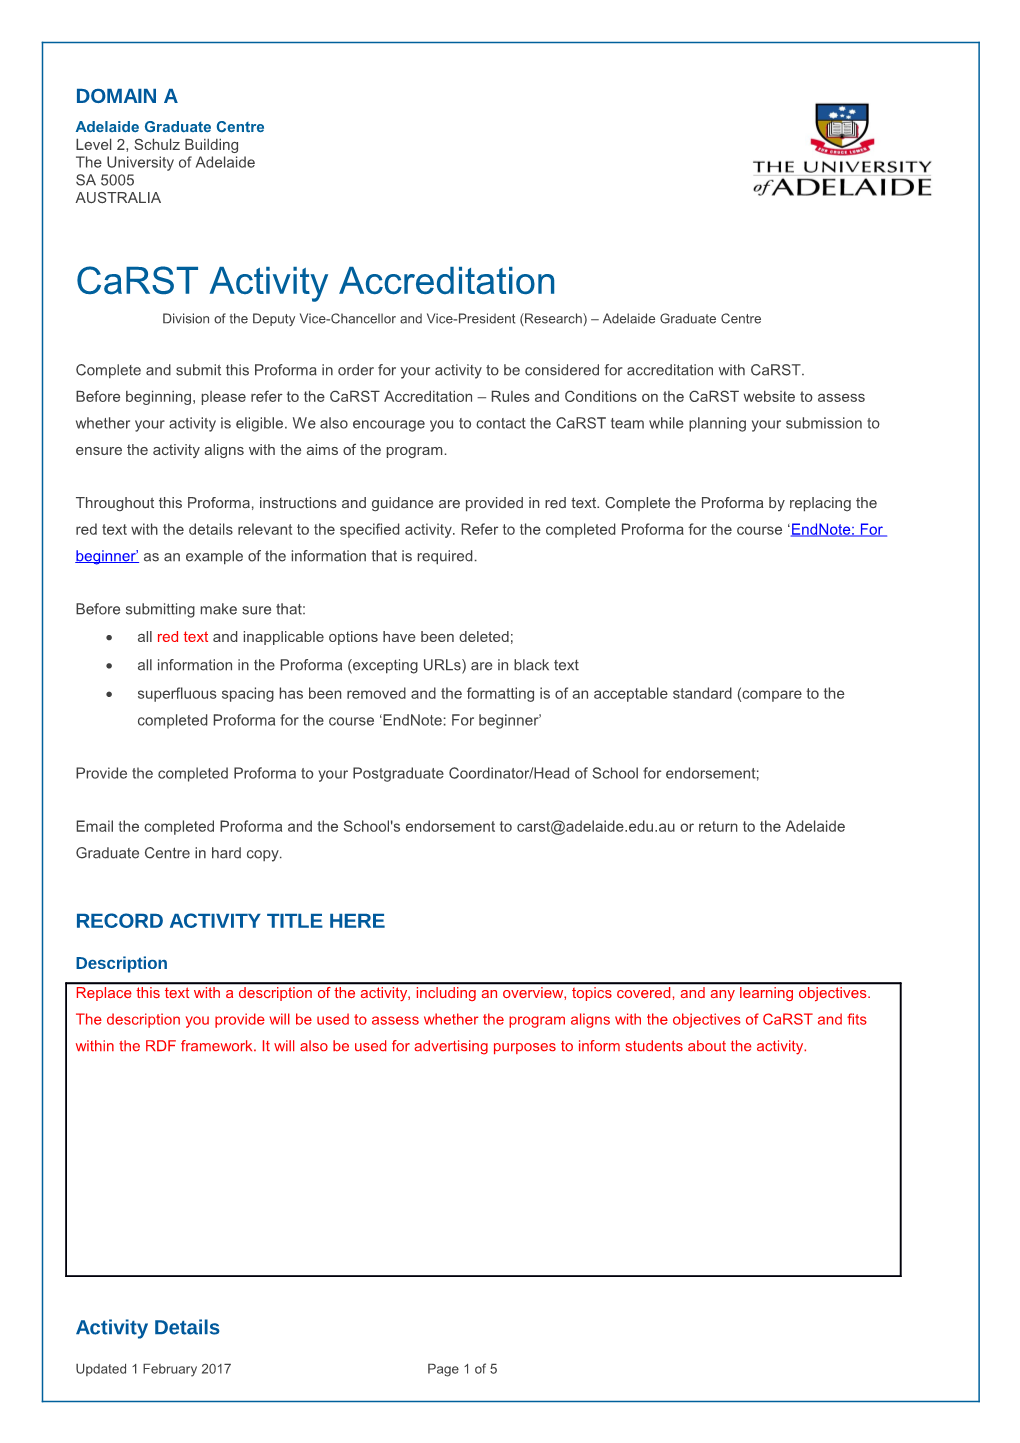 Carst Activity Accreditation